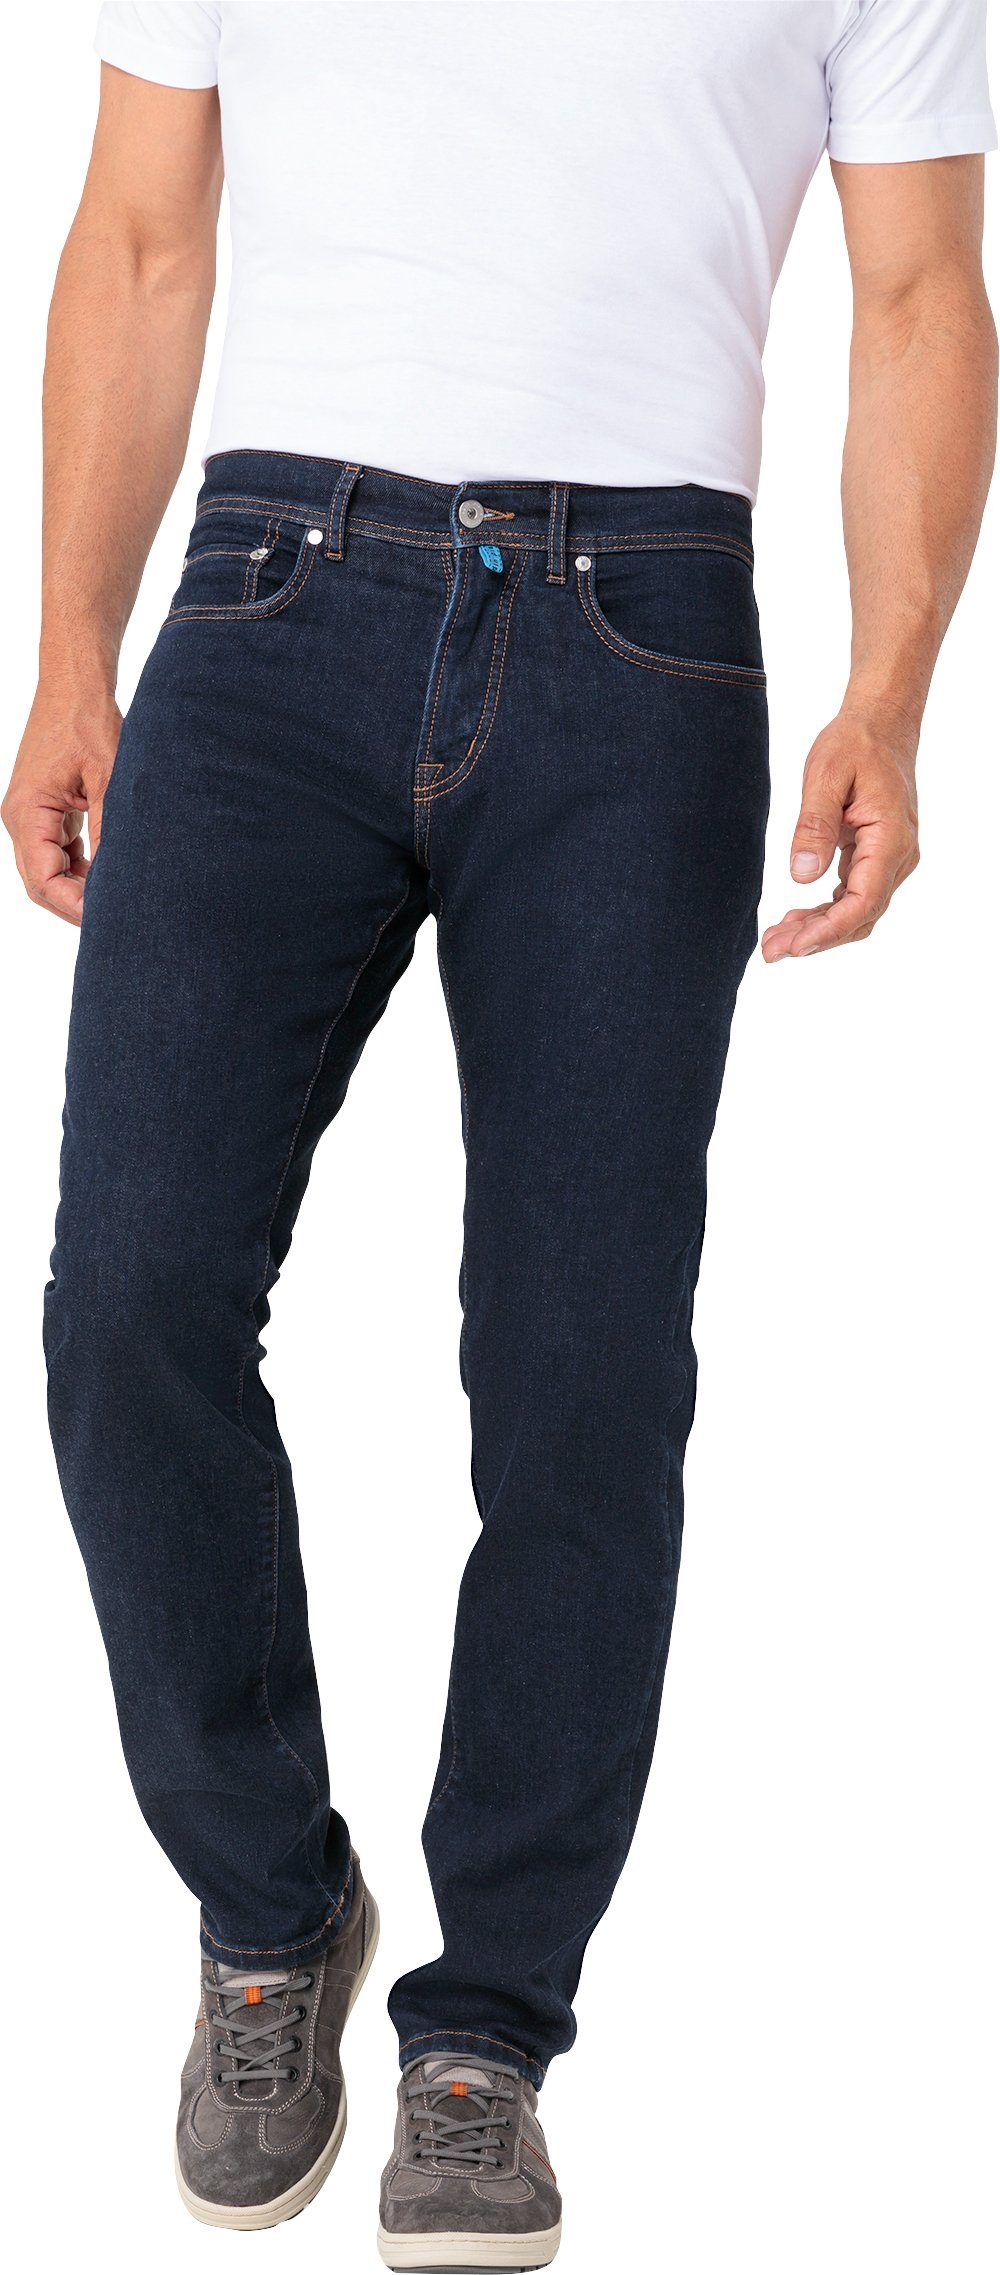 Pierre Cardin Stretch-Jeans schwarz 5-Pocket-Style